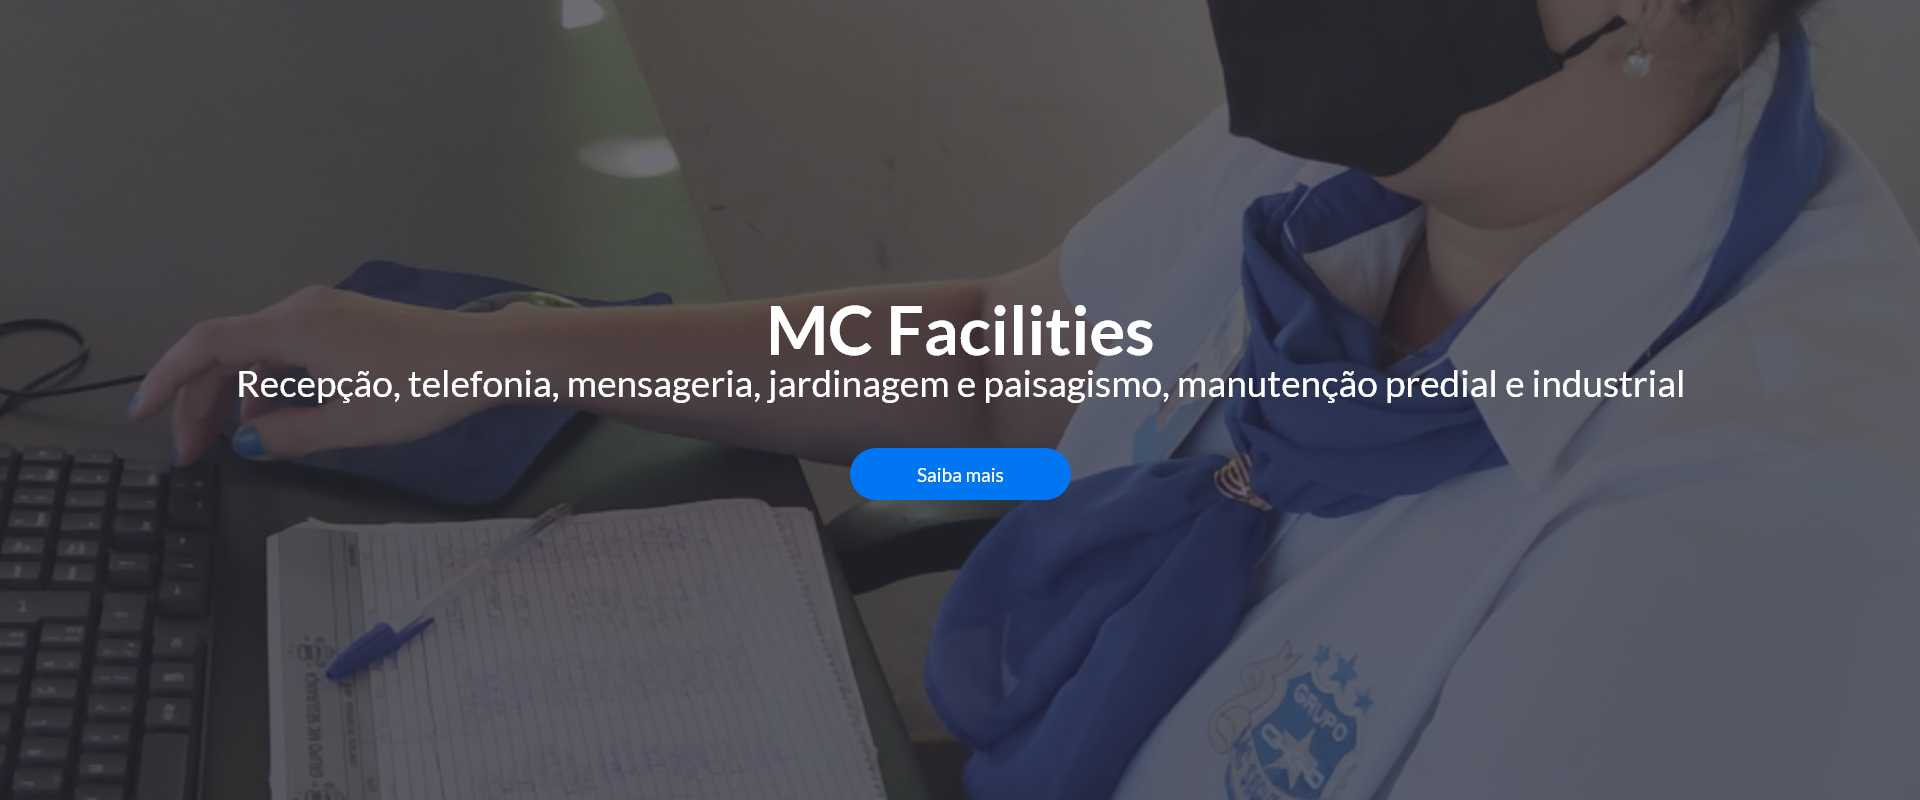 MC Facilities